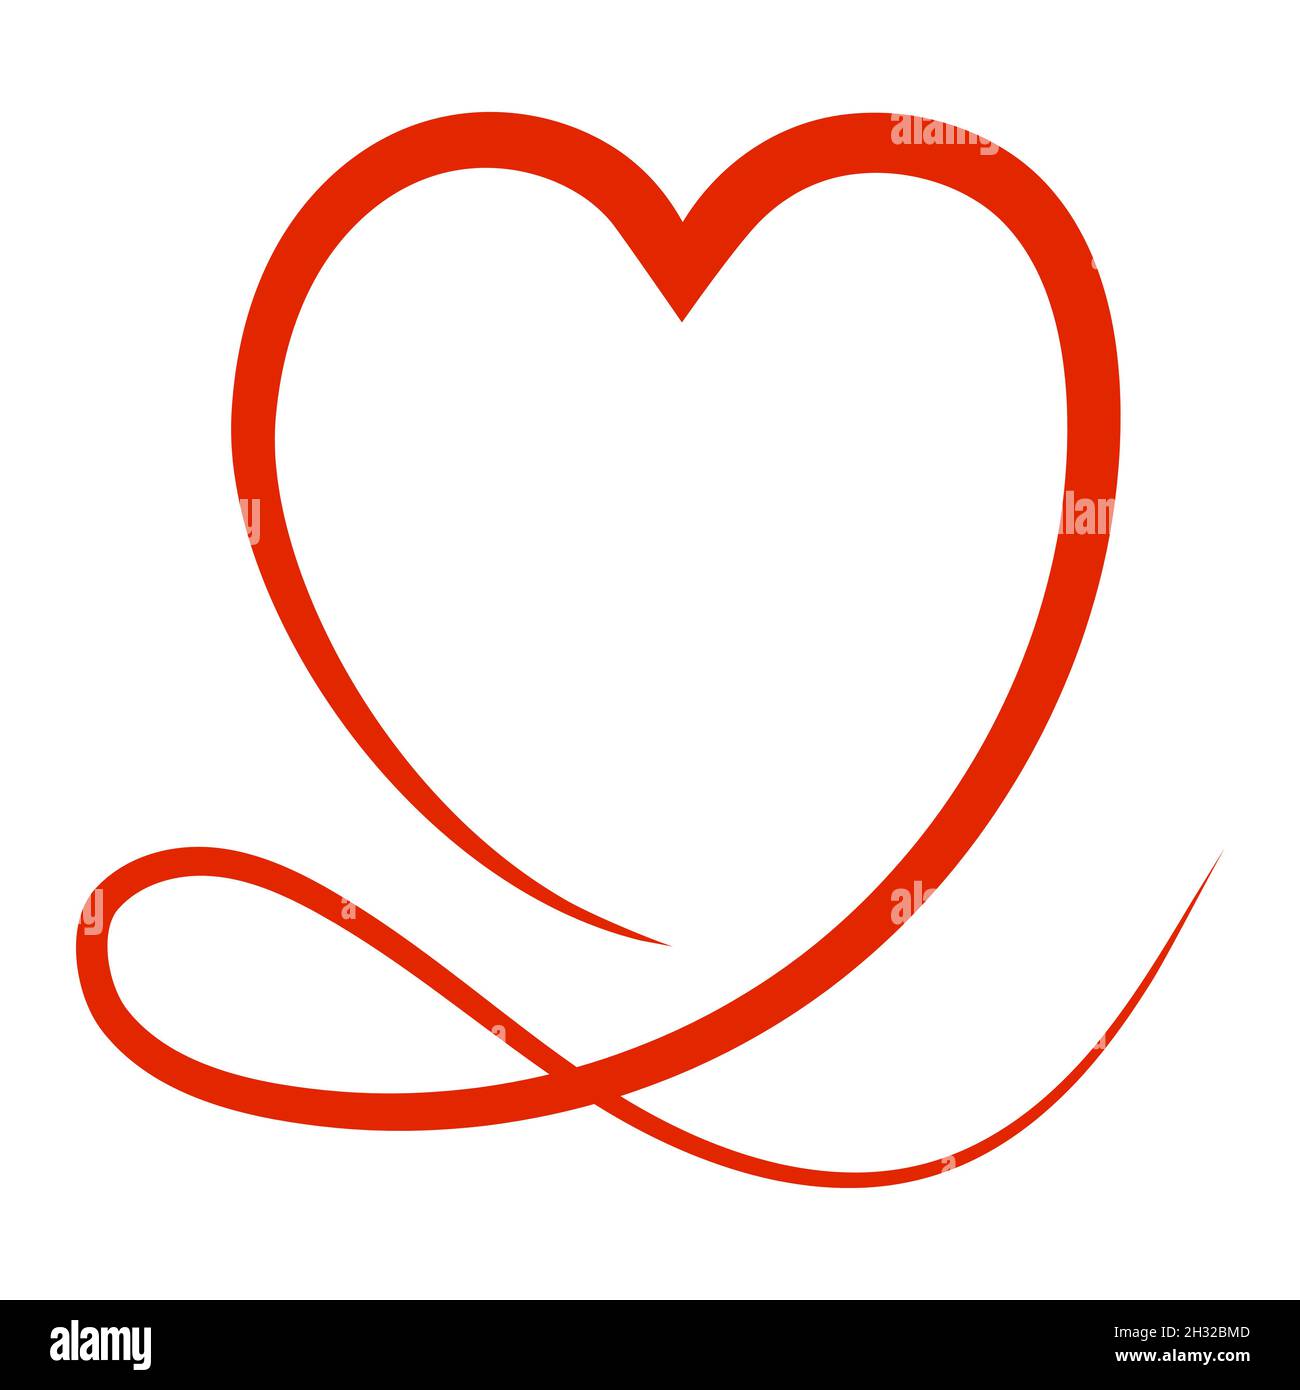 Red Heart ist eine kalligrafische Skizze im Stil von Kritzeleien für eine romantische Valentinskarte Stock Vektor